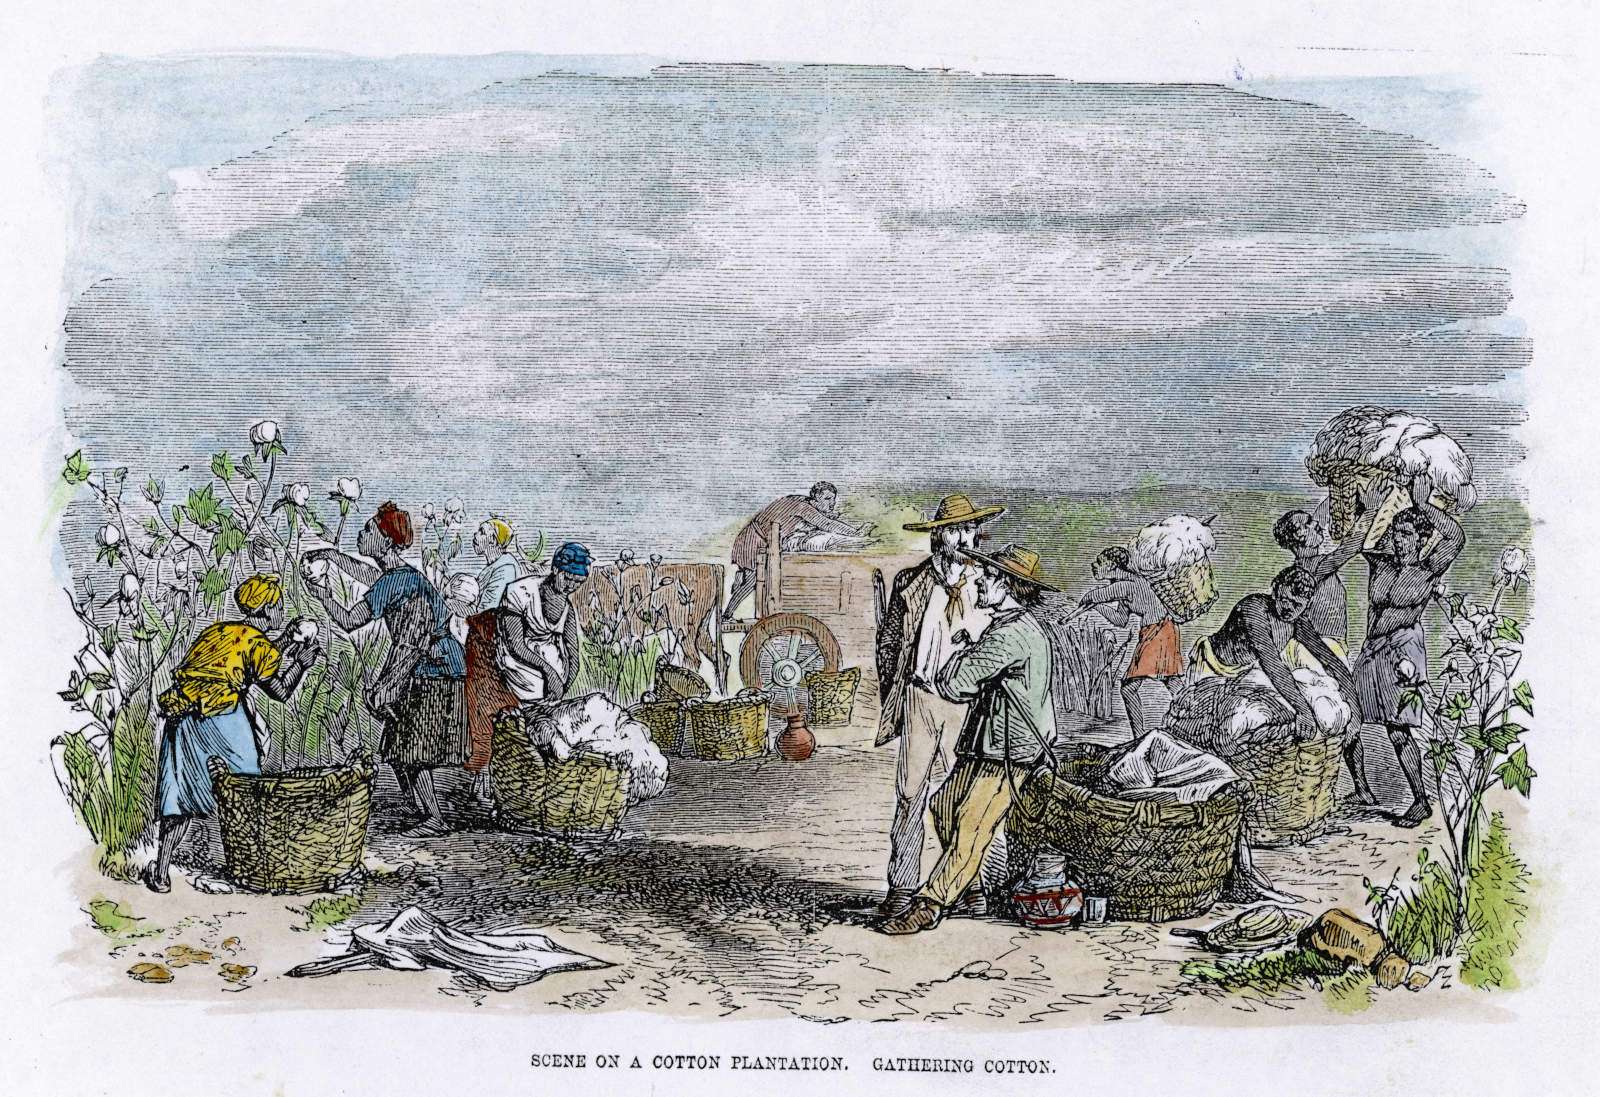 Cotton Plantation - Date 1860